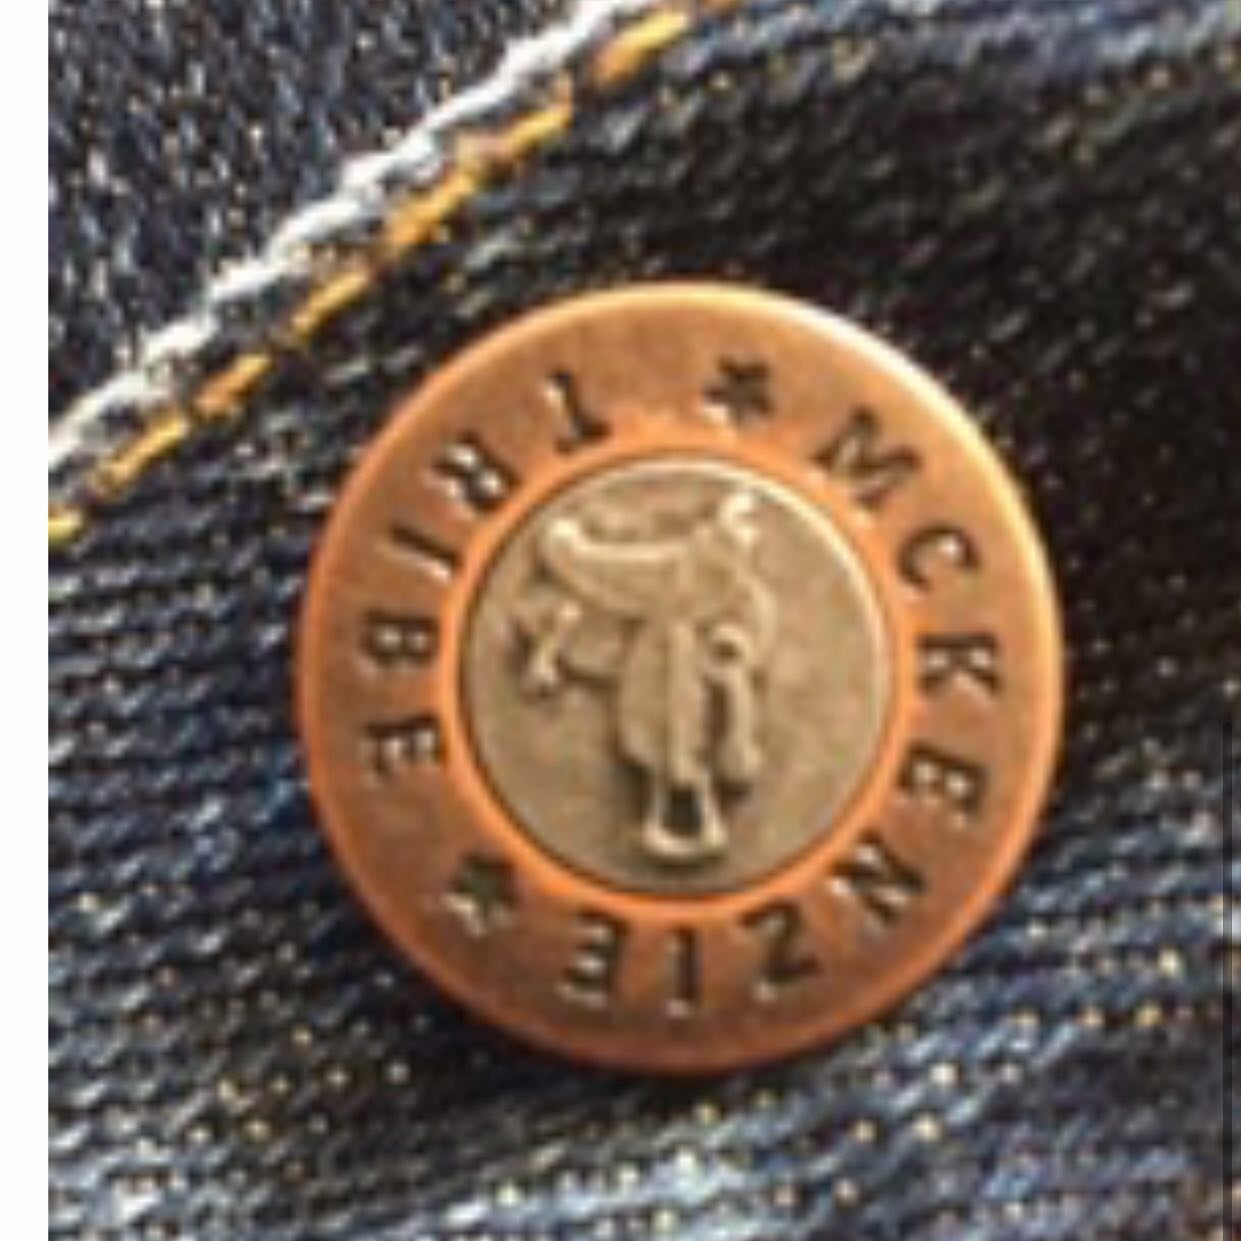 Ultra Flex Premium Denim Jean in Midnight Cowboy Wash by McKenzie Tribe